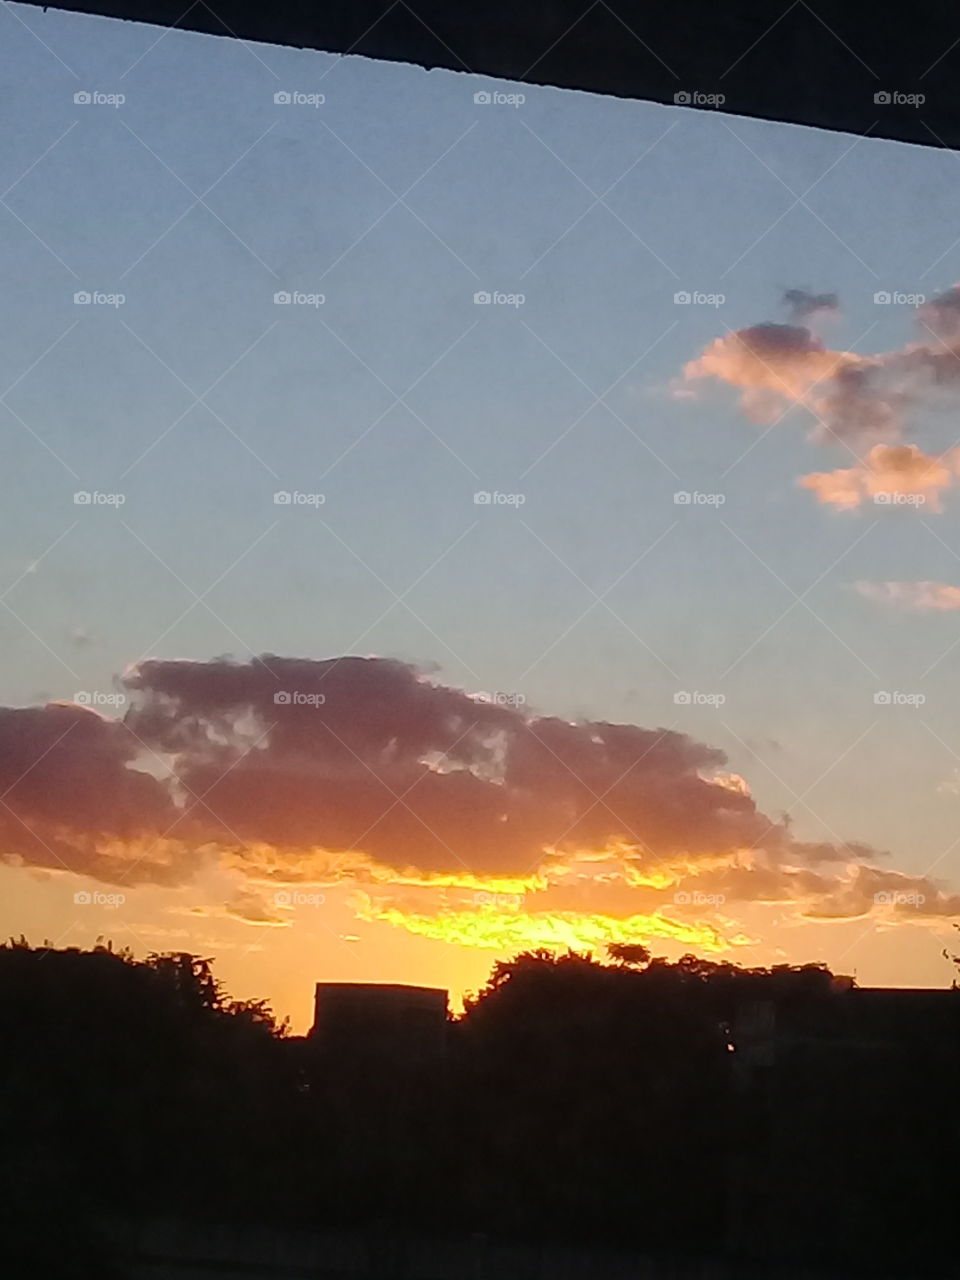 vista de una puesta de sol en una zona urbana de la ciudad de Buenos Aires, tomada desde un vehículo a cierta distancia